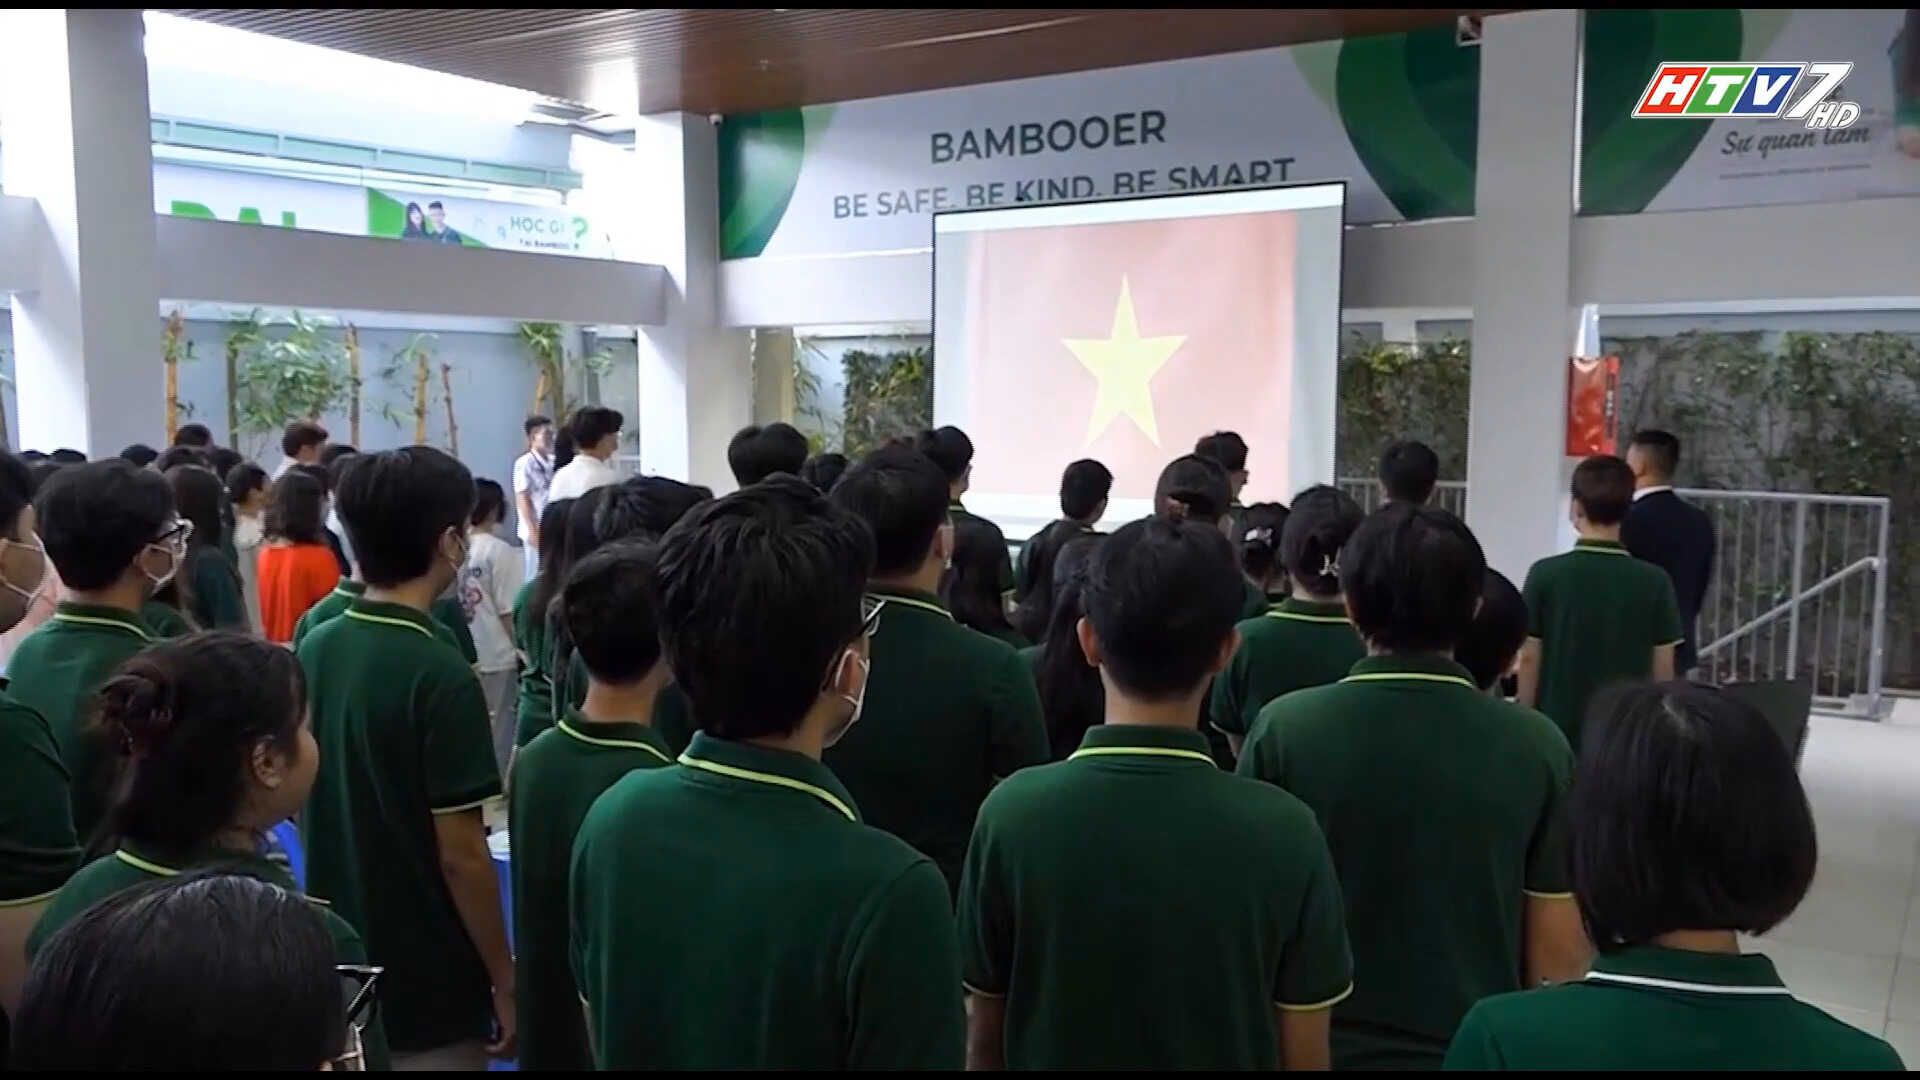 HTV nói về giáo dục yêu nước tại Bamboo